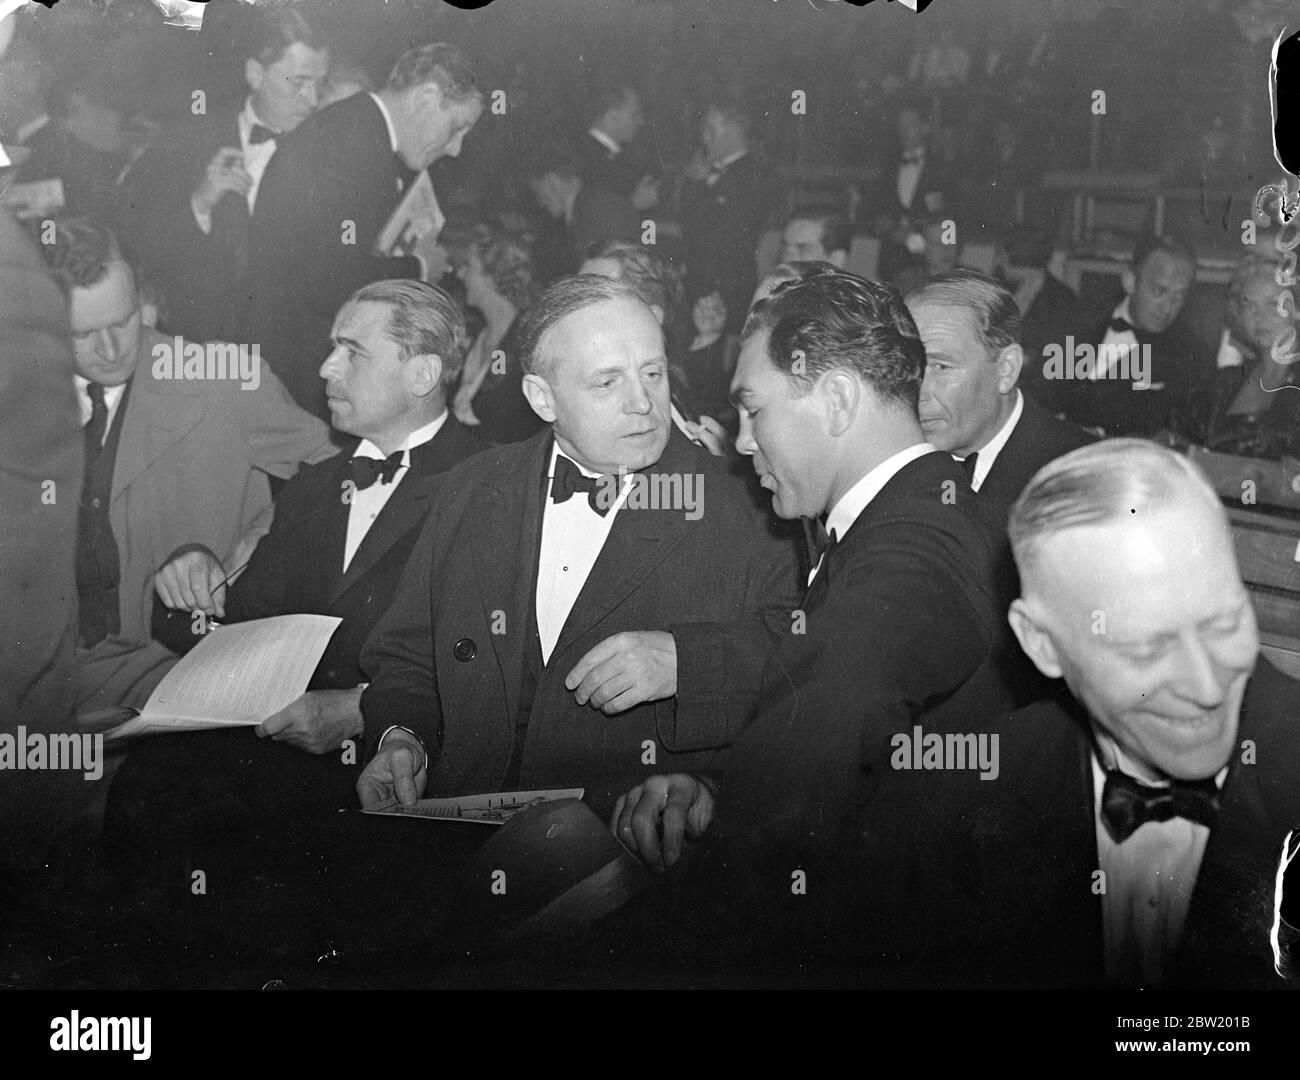 Max Schmeling et l'ambassadeur allemand von Ribbentrop, voient la victoire de Farr sur Neusel. Max Schmeling, le poids lourd allemand avec lequel il est possible que le Welshman soit assorti, a regardé Tommy Farr, a fait tomber son compatriote Walter Neusel, dans le troisième tour du match à la Harringay Arena, Londres. Photos: Max Schmeling s'est entretenir avec l'ambassadeur allemand Herr Joachim von Ribbentrop, au ringside du 15 juin 1937 Banque D'Images